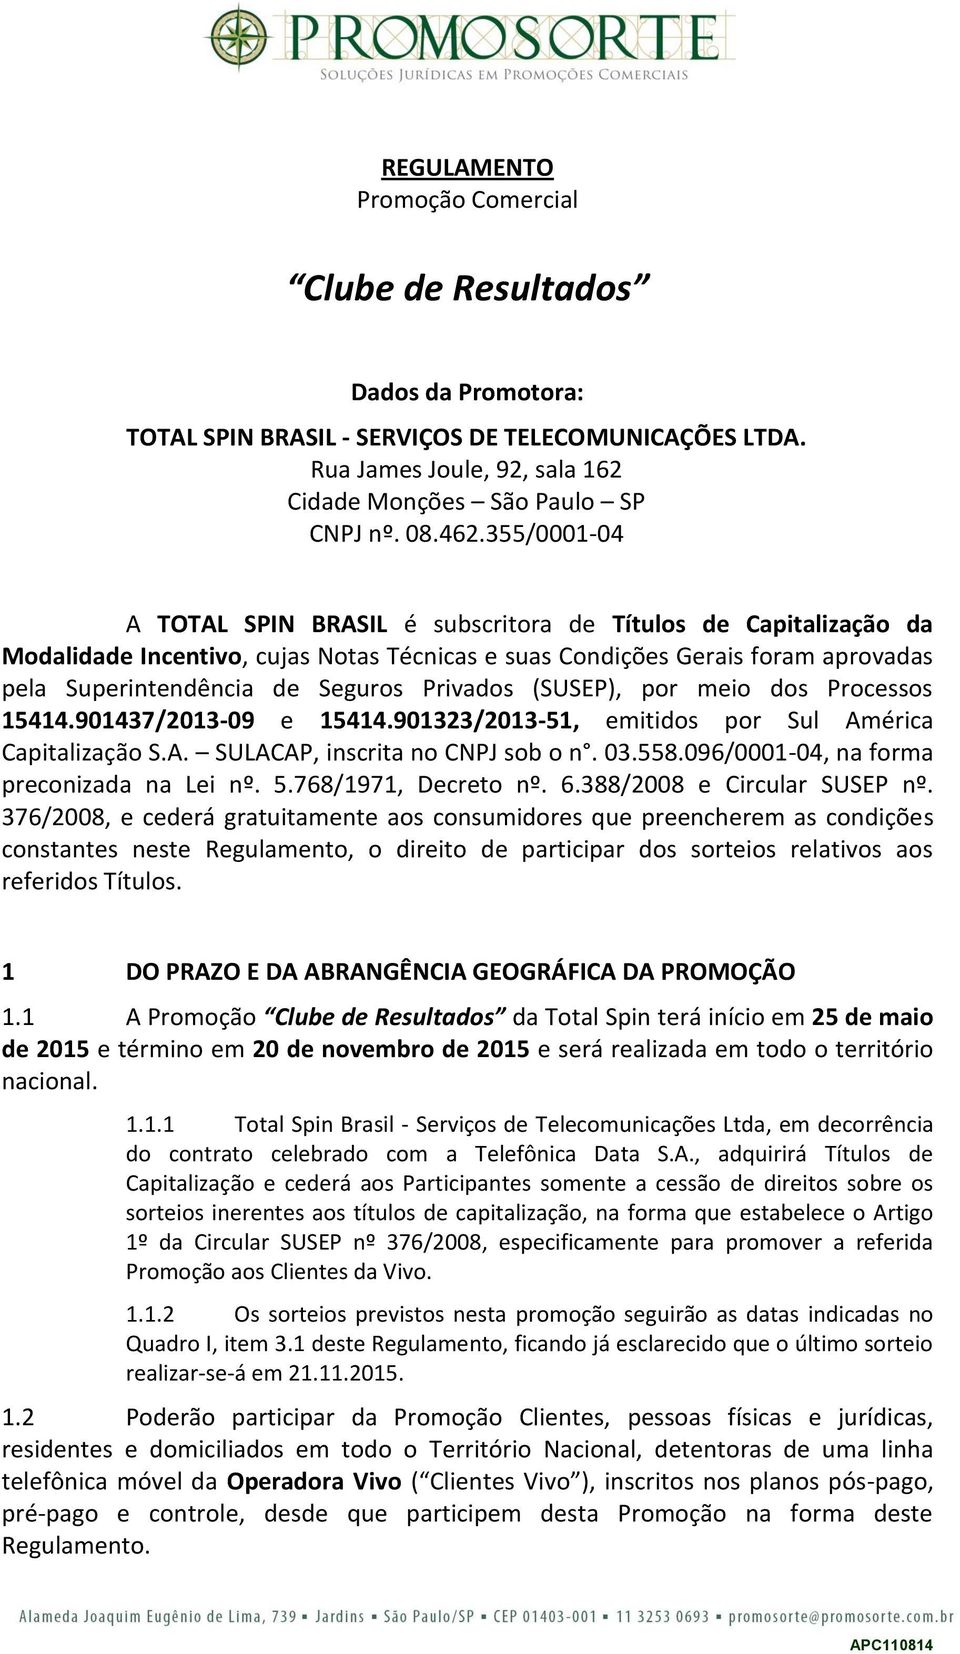 Privados (SUSEP), por meio dos Processos 15414.901437/2013-09 e 15414.901323/2013-51, emitidos por Sul América Capitalização S.A. SULACAP, inscrita no CNPJ sob o n. 03.558.